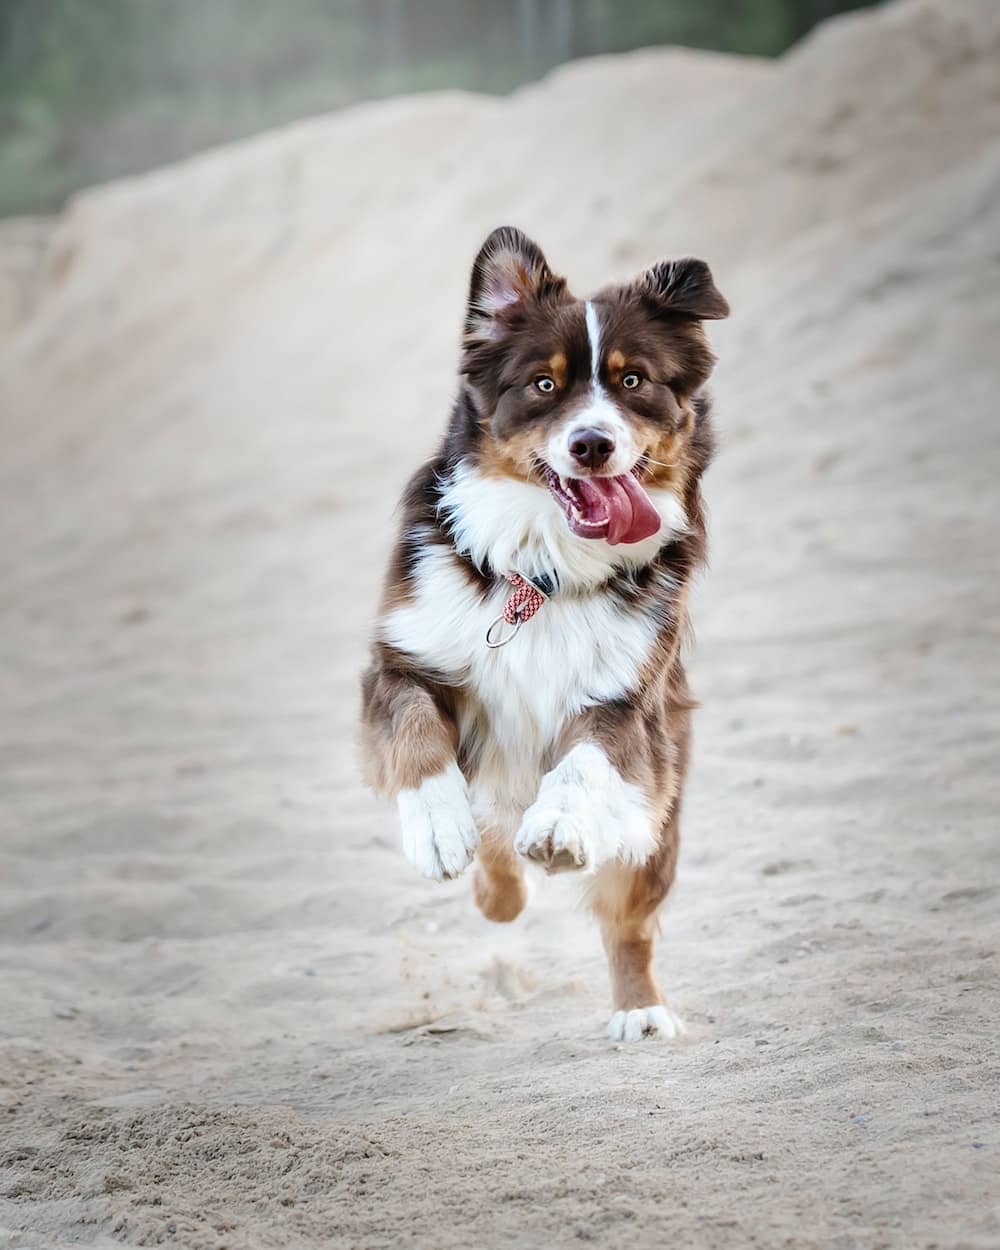 dog running at camera with tongue out